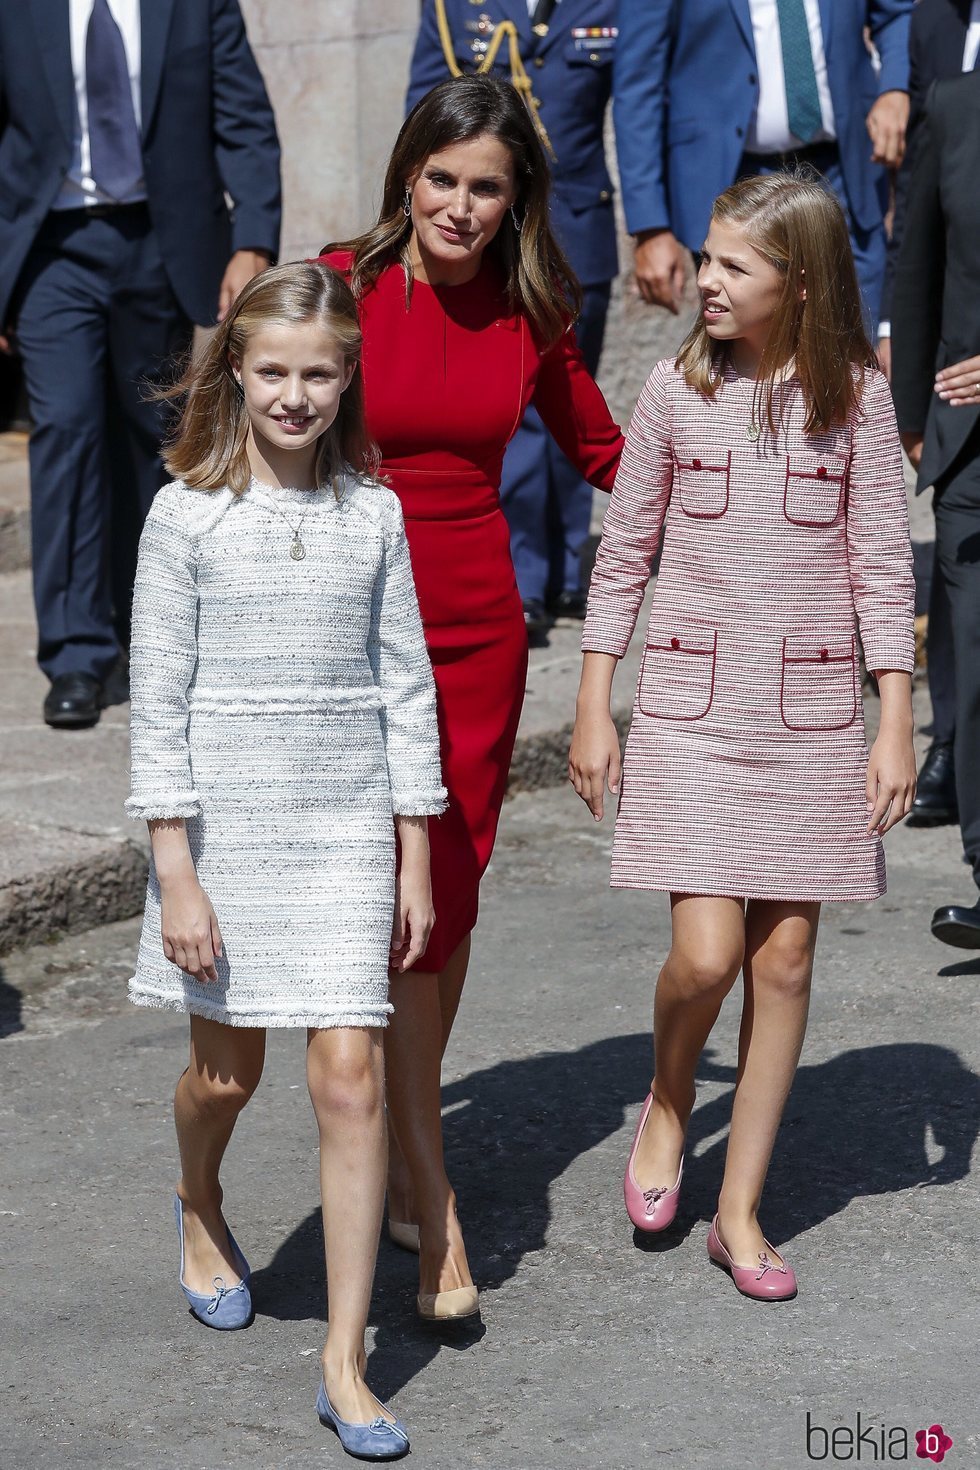 La Reina Letizia, la Princesa Leonor y la Infanta Sofía en Covadonga